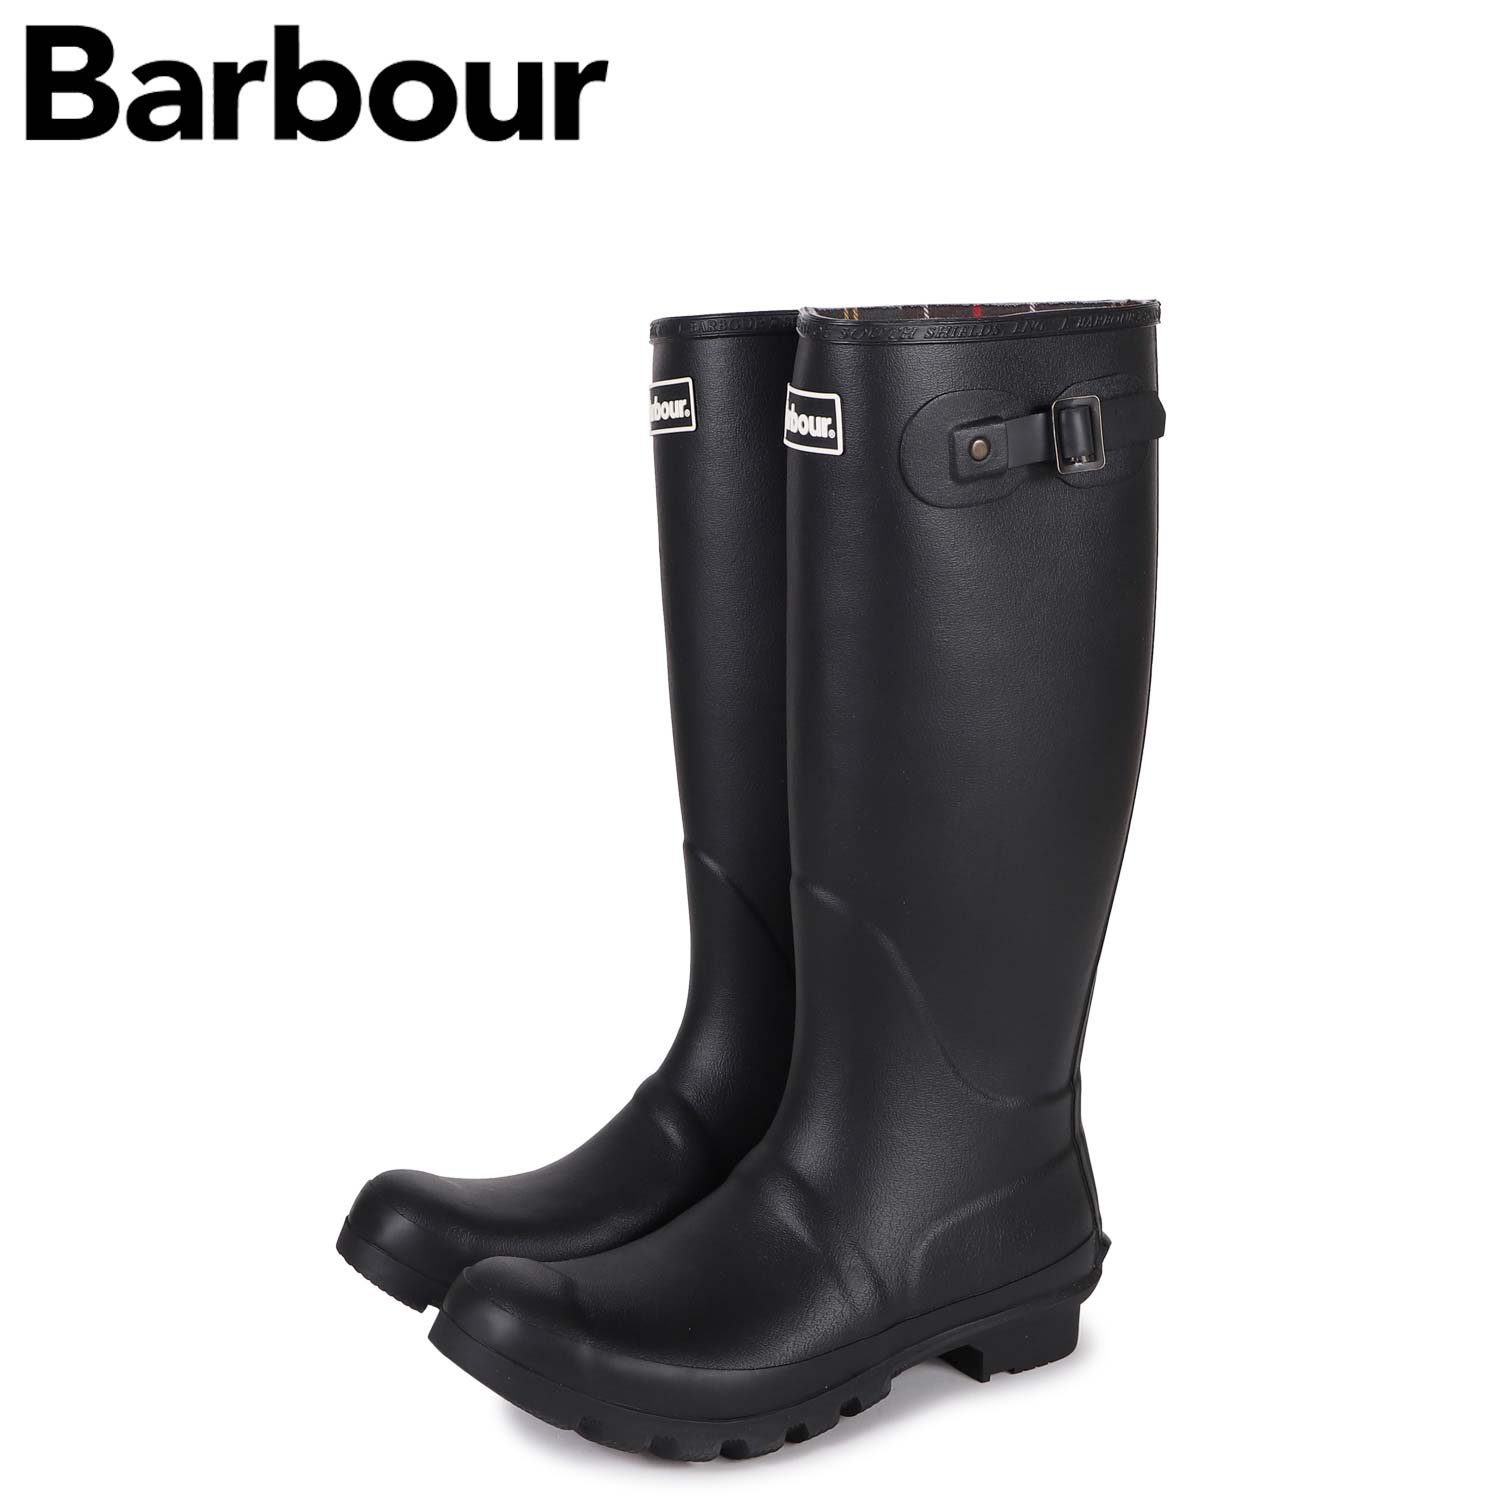 【訳あり】 Barbour BEDE バブアー 長靴 レインブーツ ビード メンズ ブラック 黒 MRF0010-BK31 【返品不可】